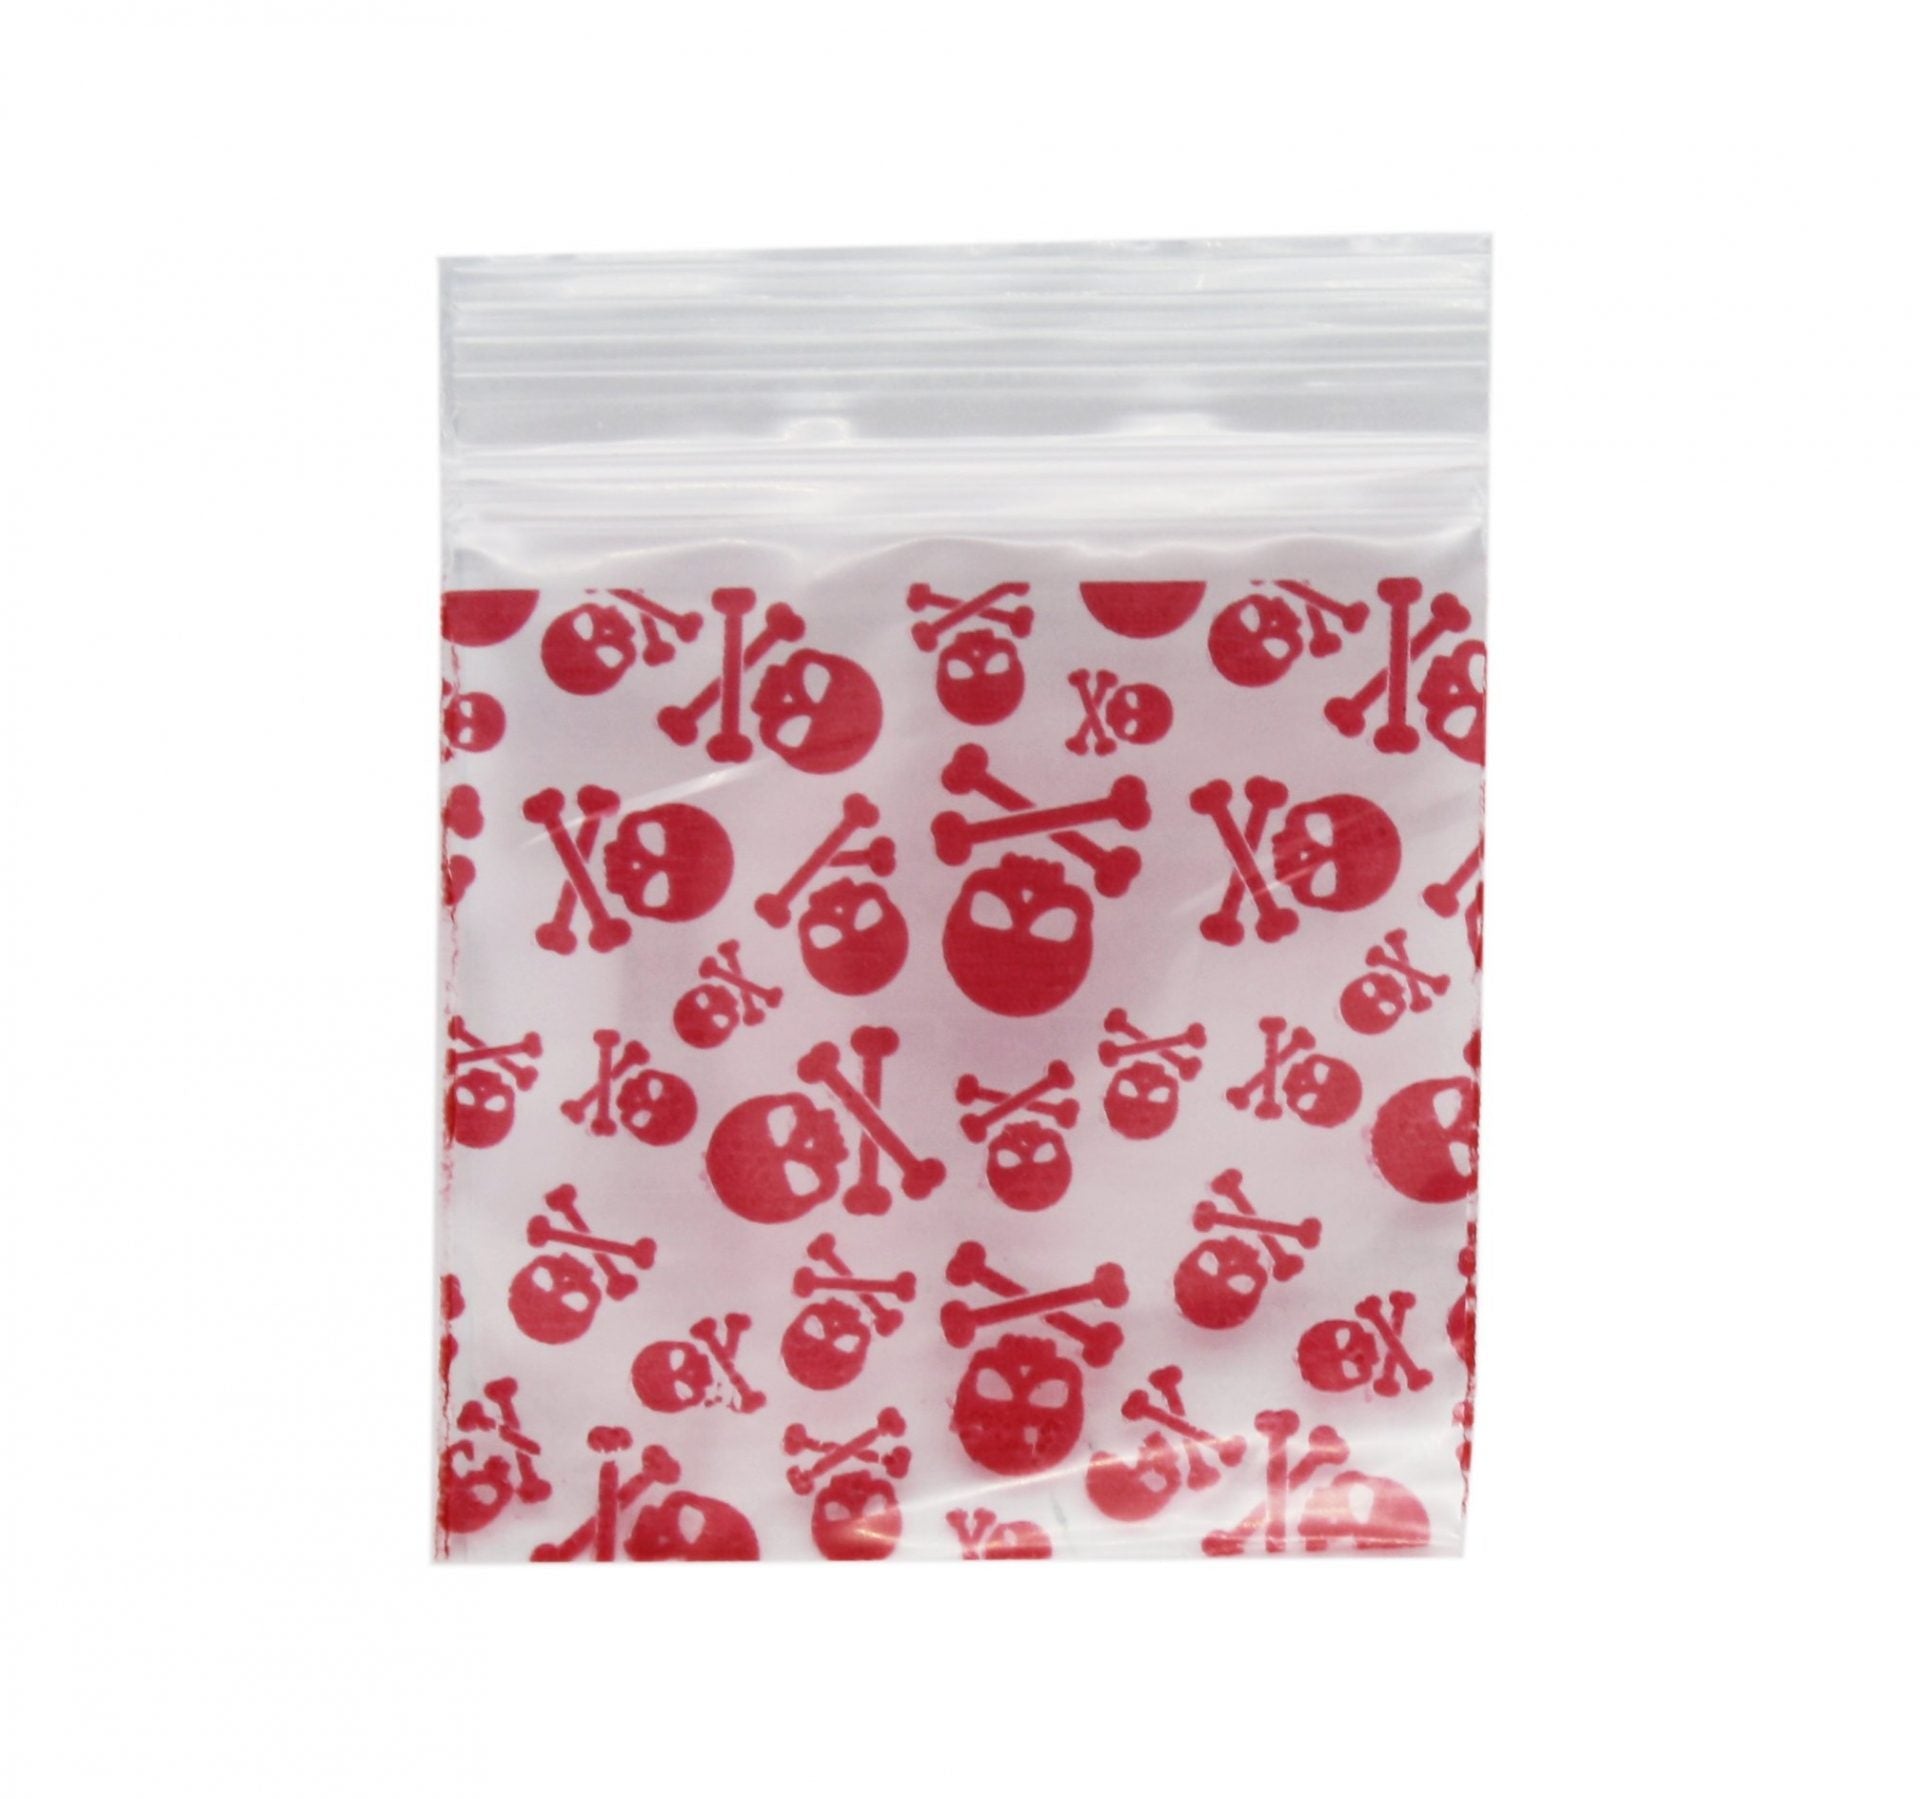 Red Skull Bag 51mm x 51mm - Plastic Bag - BongsMart Australia